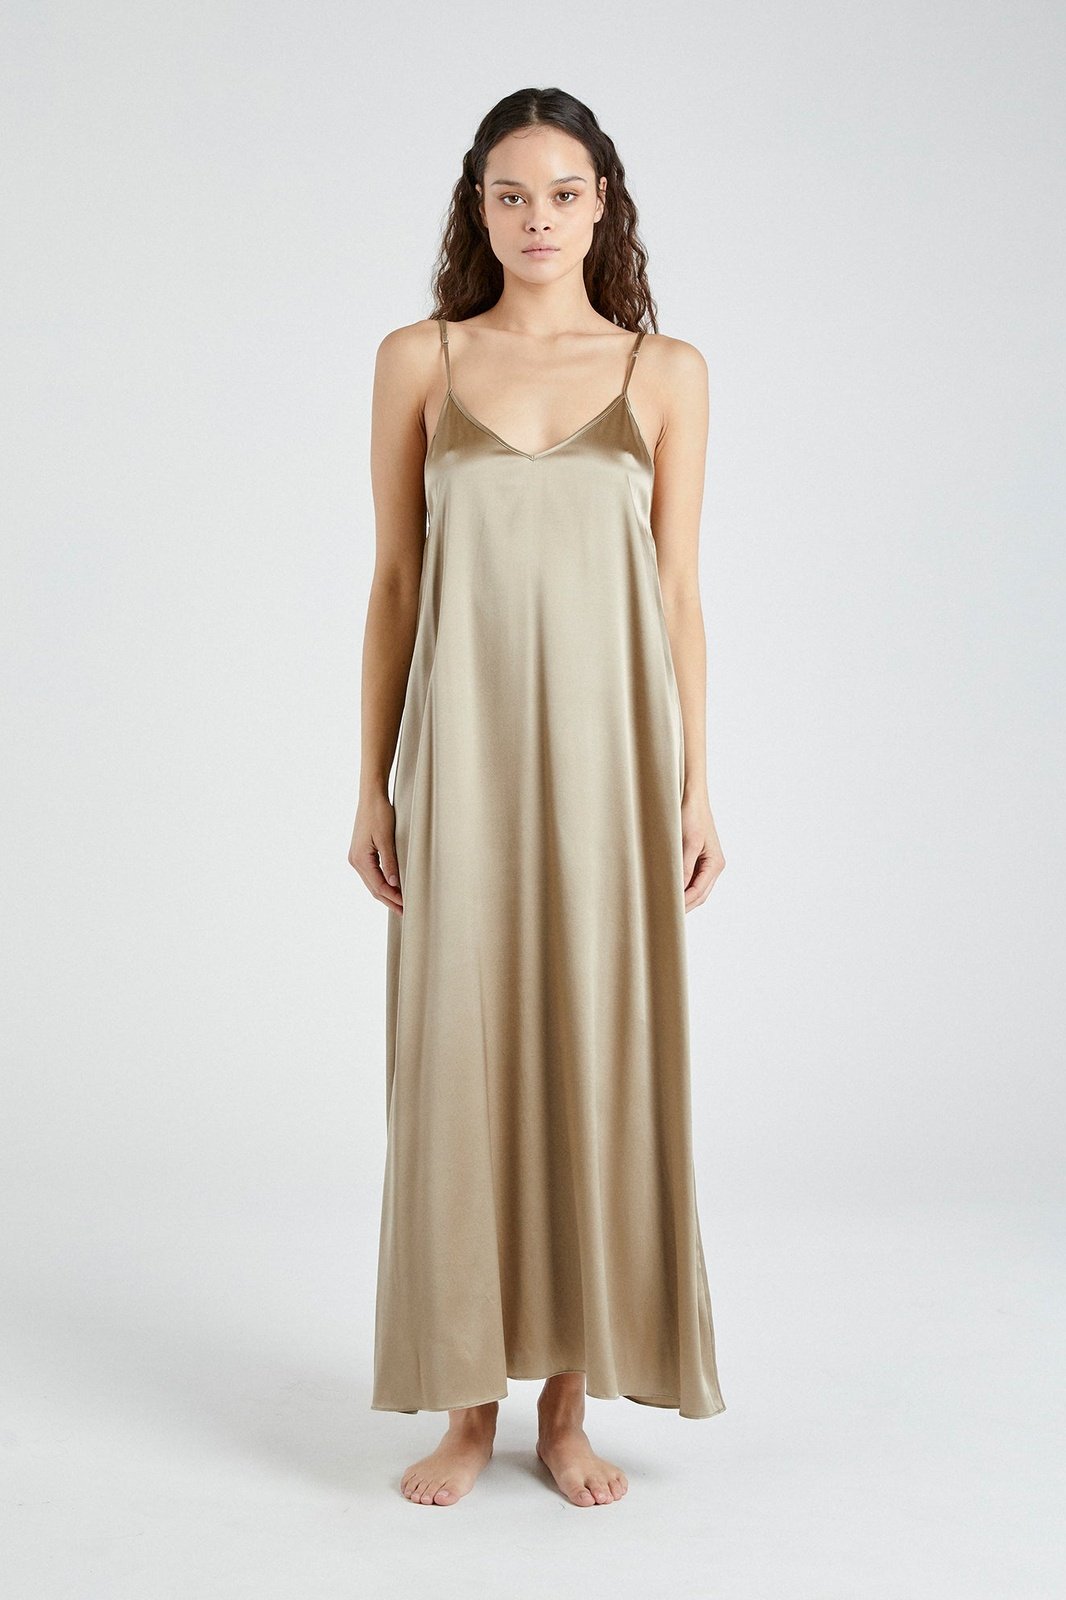 +Beryll Silk Maxi Dress Julie | Caramel - +Beryll Silk Dress Julie | Forest - +Beryll Worn By Good People